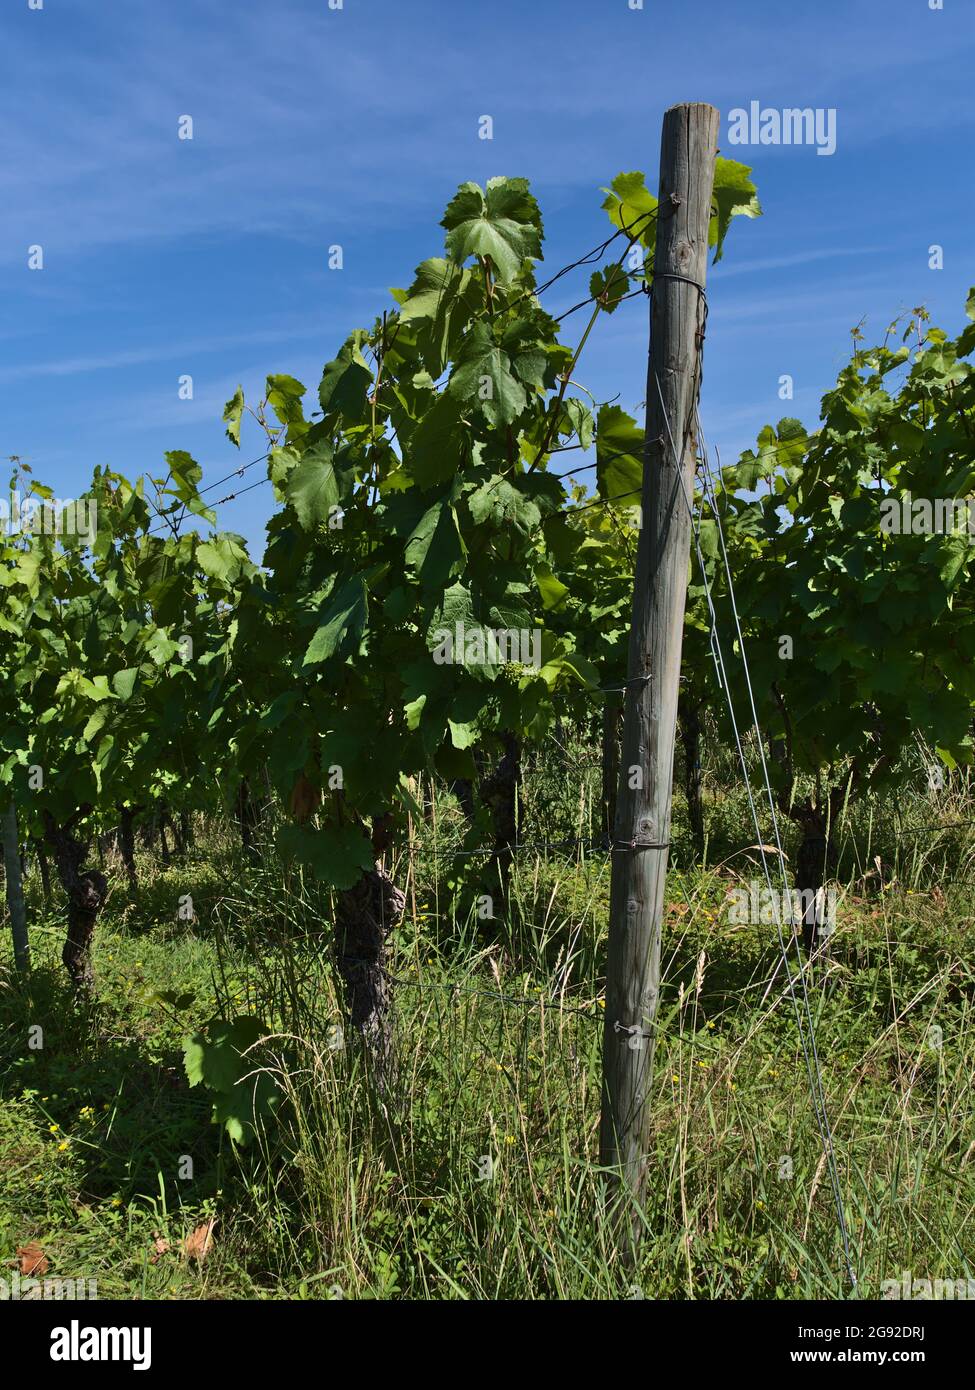 Weinberg mit Holzstapel und grünen Weinstöcken (vitis vinifera) mit jungen Trauben und Gras an sonnigen Sommertagen in der Nähe von Beilstein, Deutschland. Stockfoto